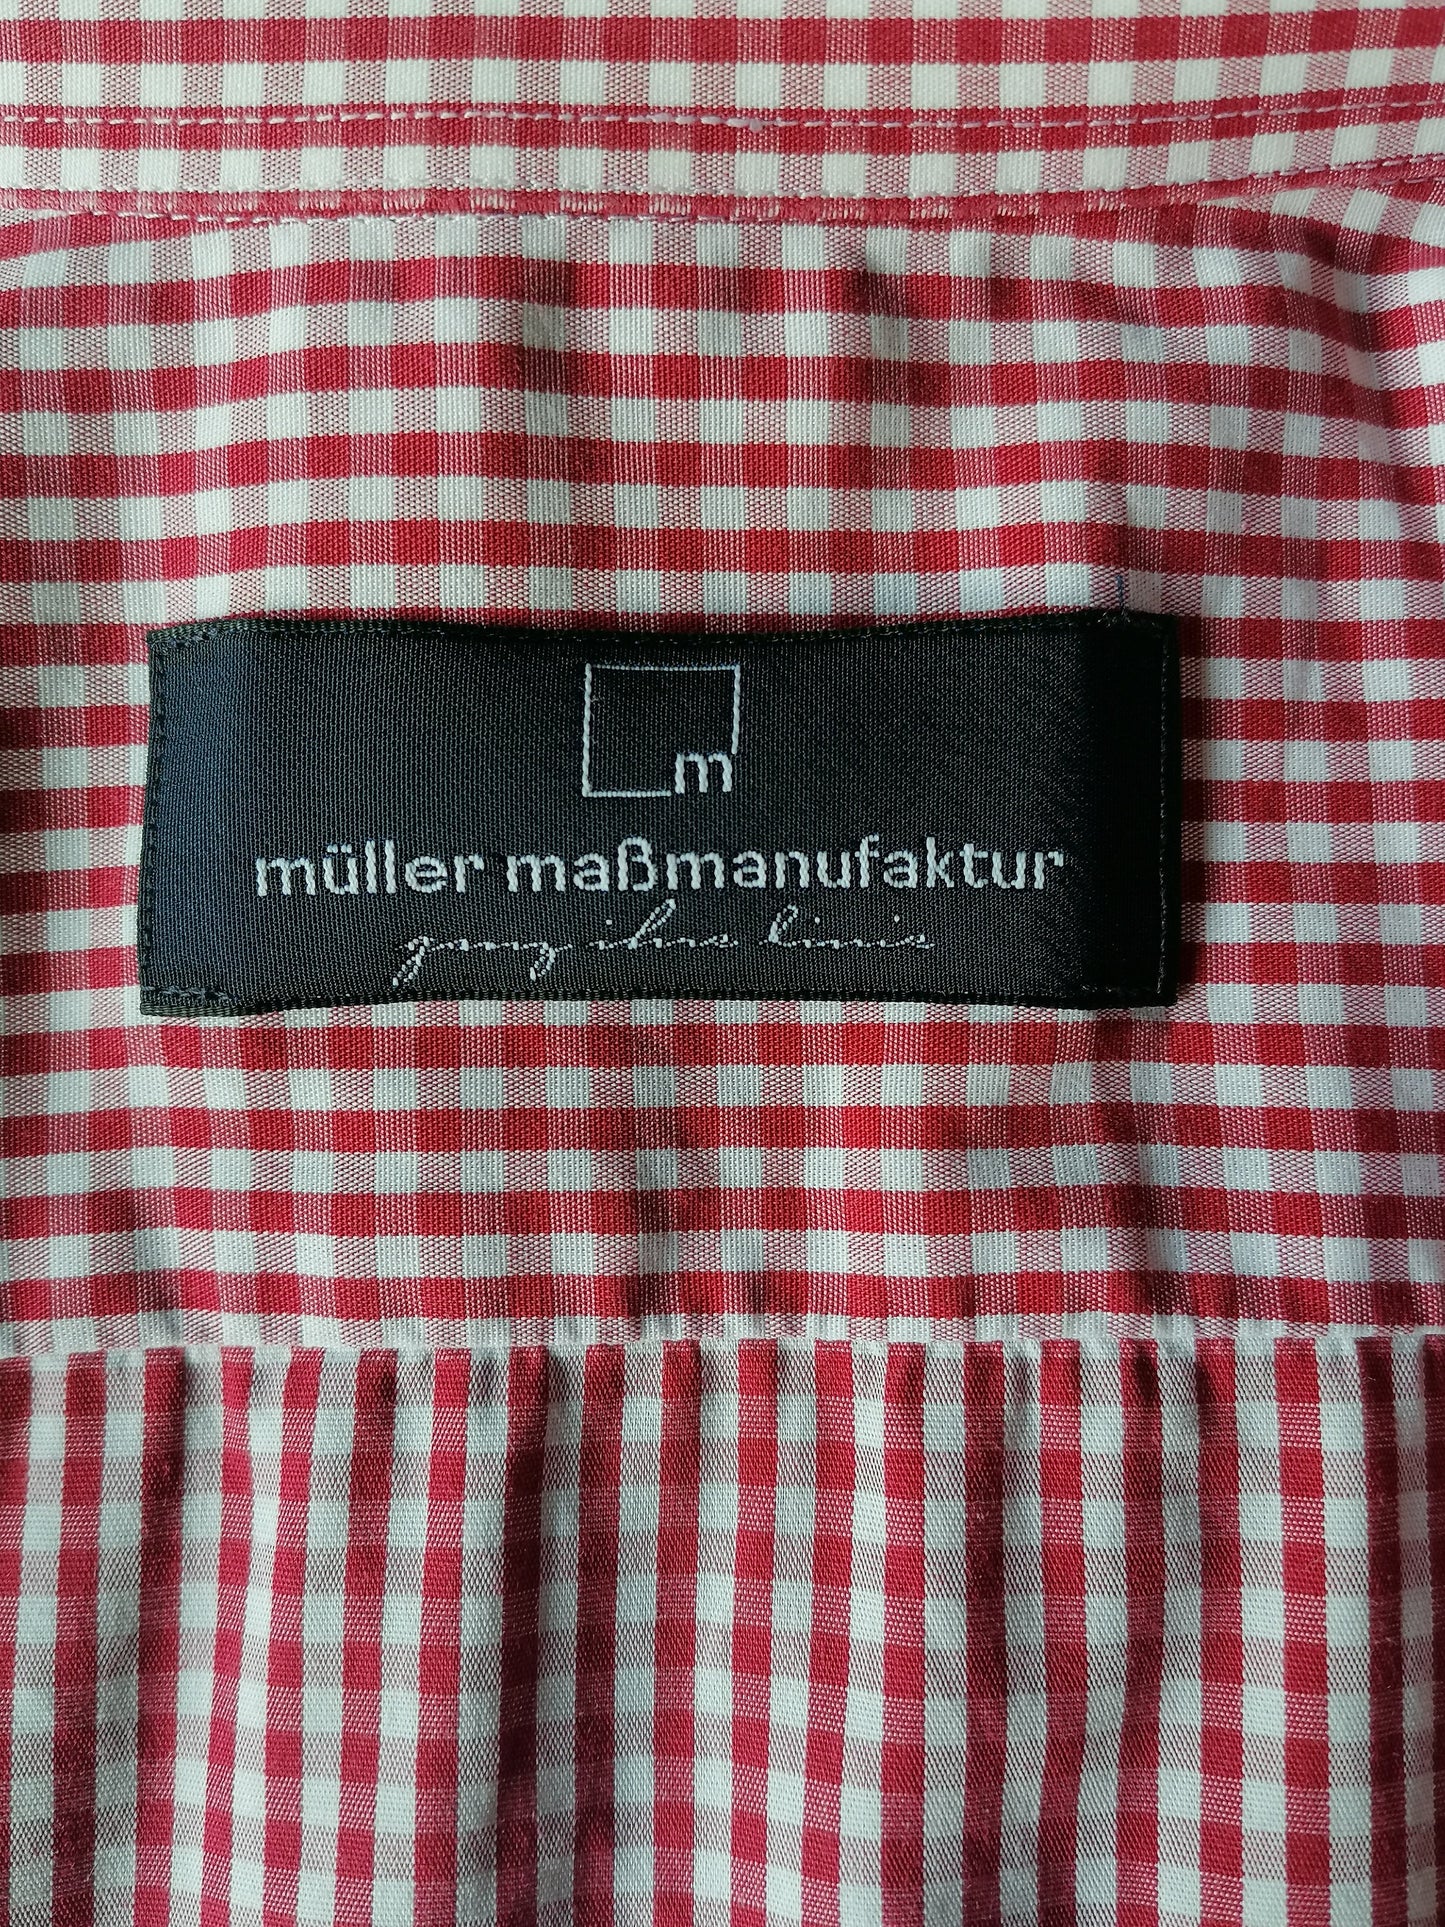 Müller Maßmanufaktur overhemd. Rood Wit geblokt. Maat XL. "FJ"